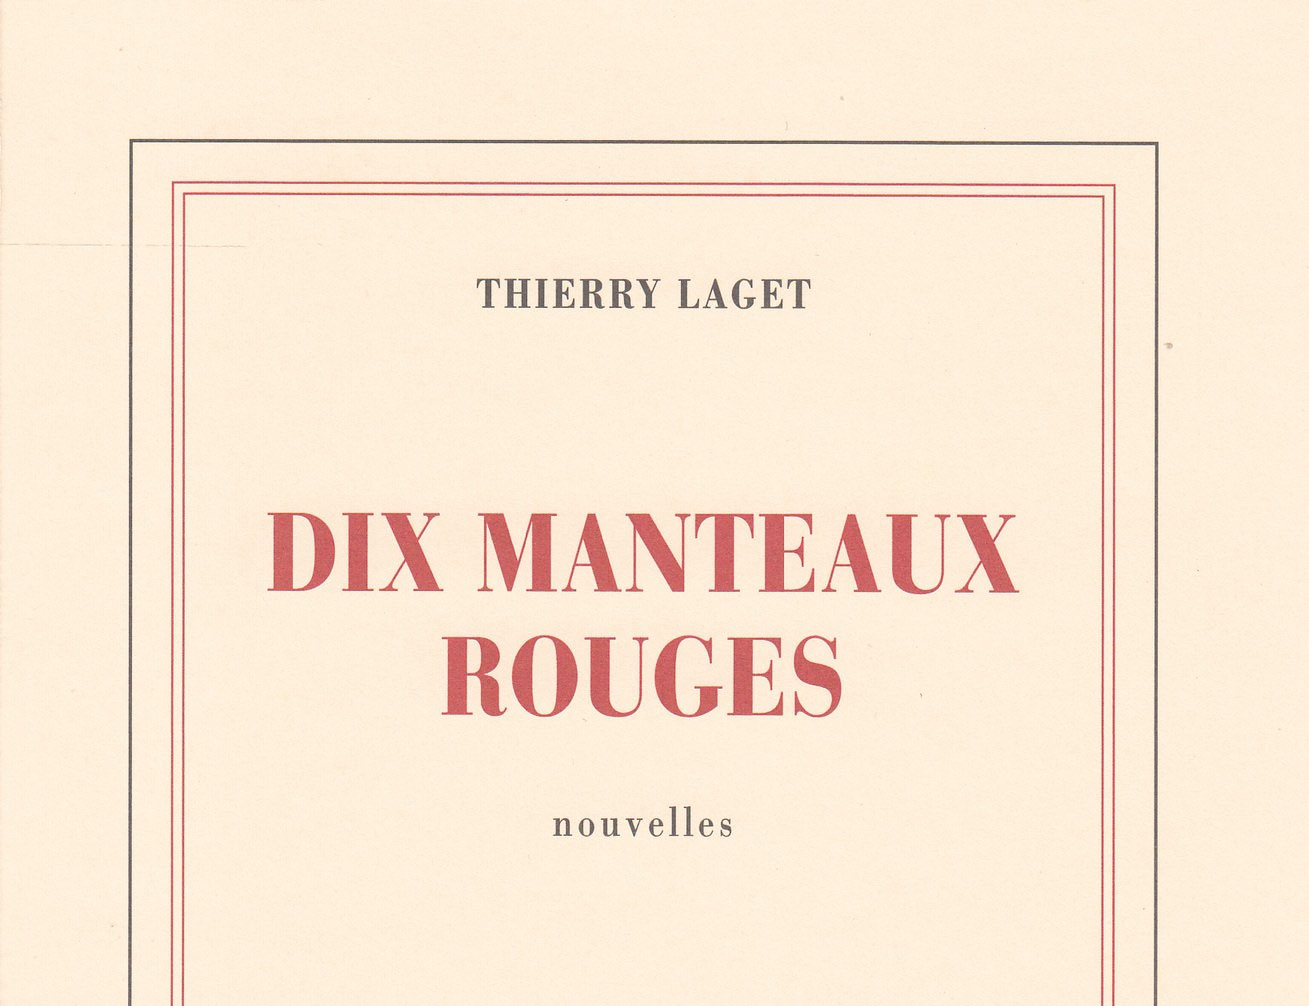 Dix-manteaux-rouges-Thierry-Laget